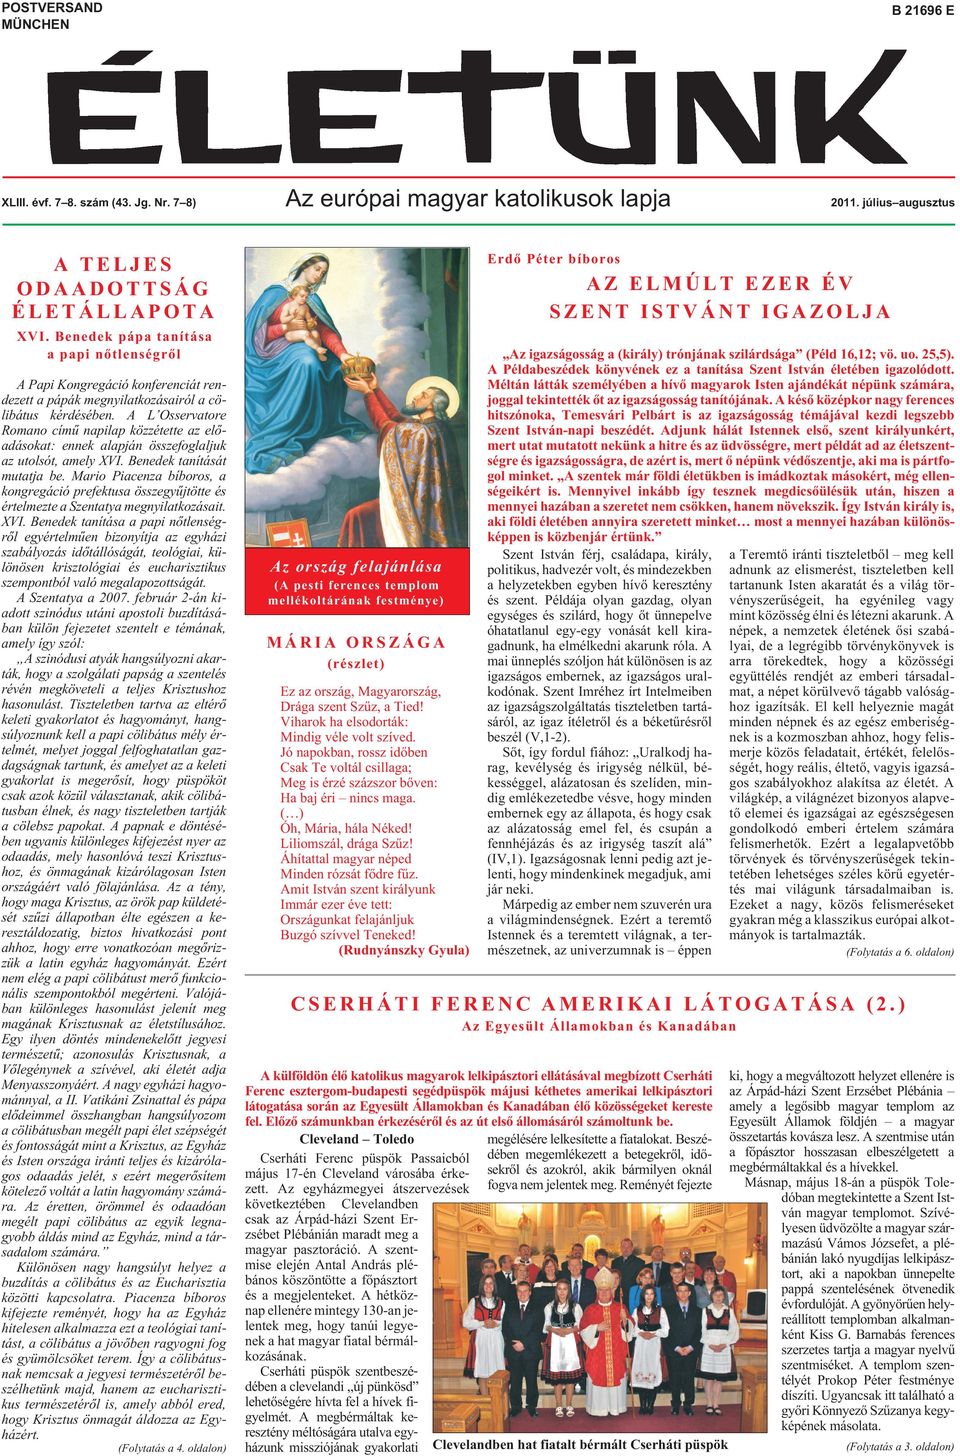 A L Osservatore Romano címû napilap közzétette az elõadásokat: ennek alapján összefoglaljuk az utolsót, amely XVI. Benedek tanítását mutatja be.